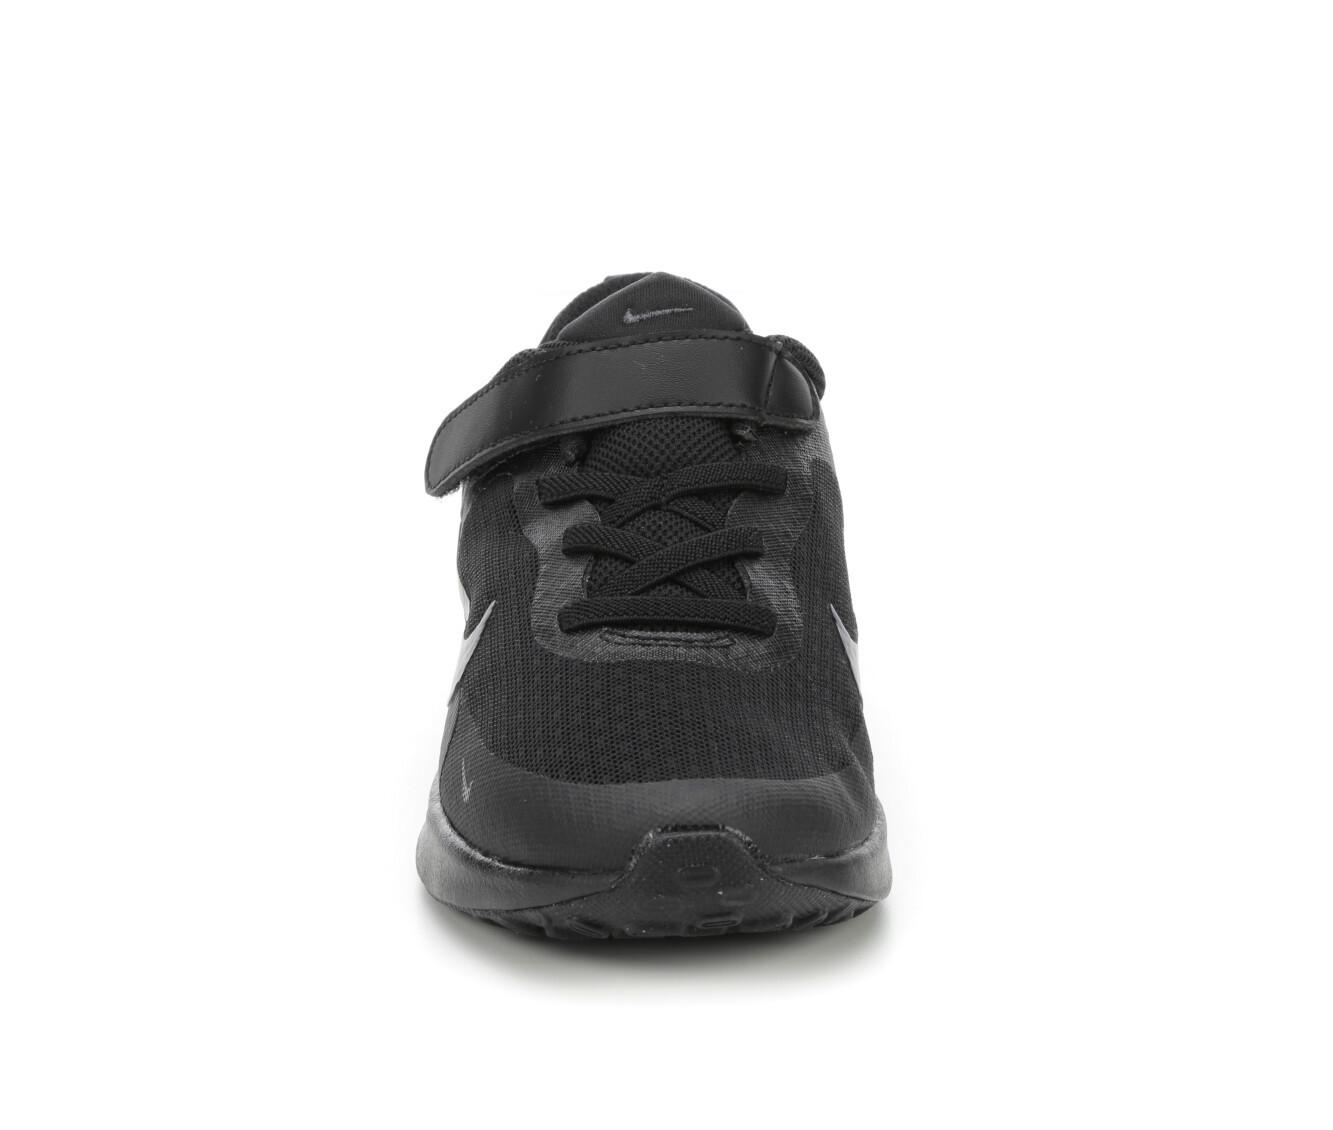 Boys' Nike Toddler & Little Kid Revolution 7 Running Shoes